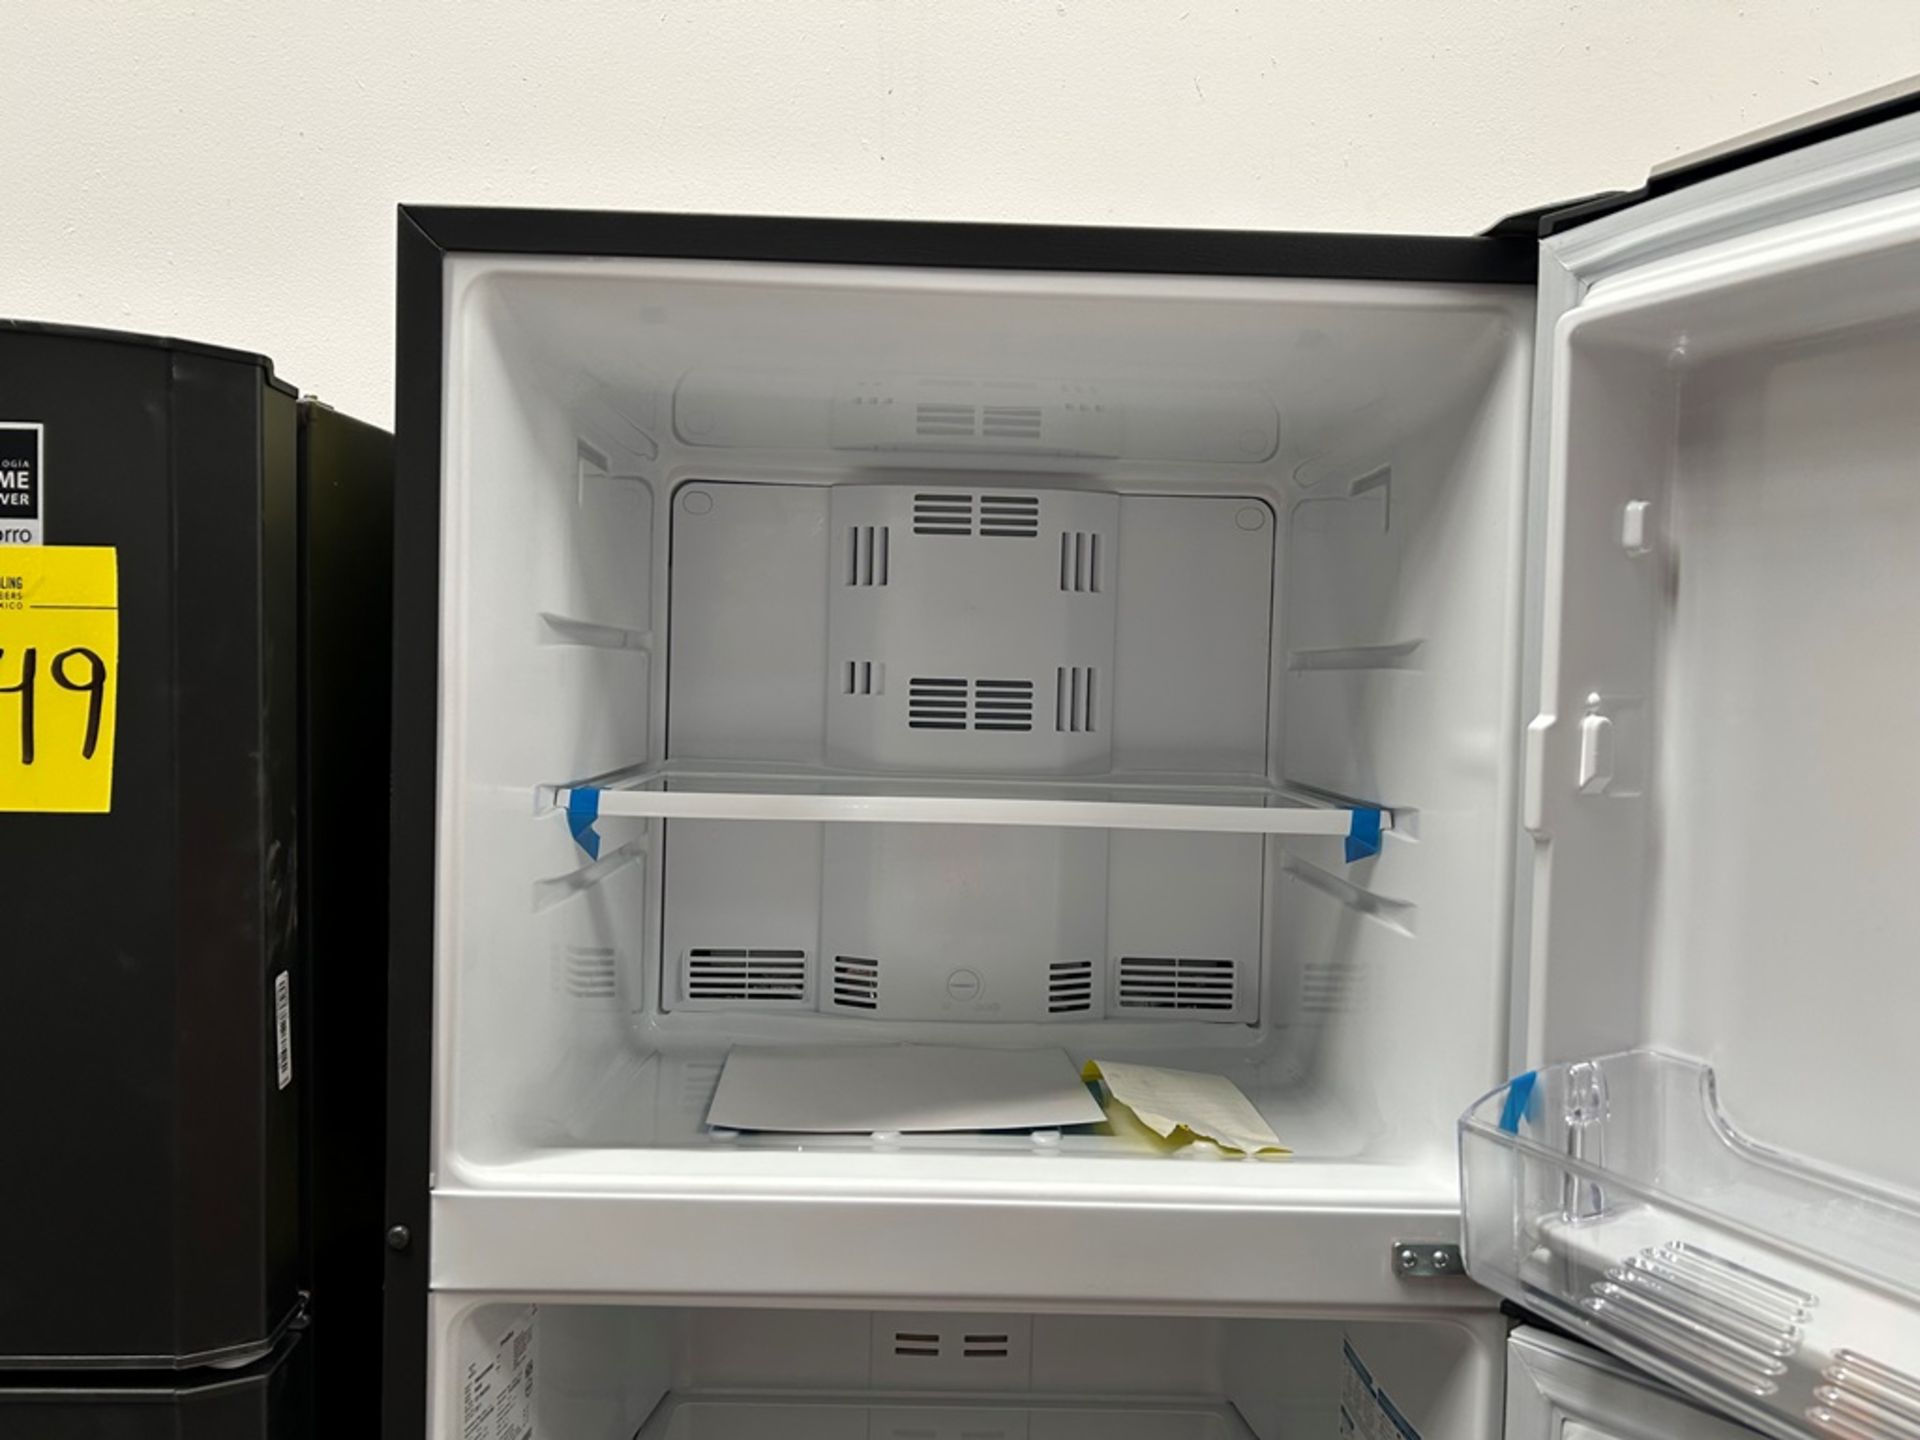 Lote de 2 refrigeradores contiene:1 refrigerador Marca MABE, Modelo RMS400IVMRMA, Serie 03009, Colo - Image 6 of 18